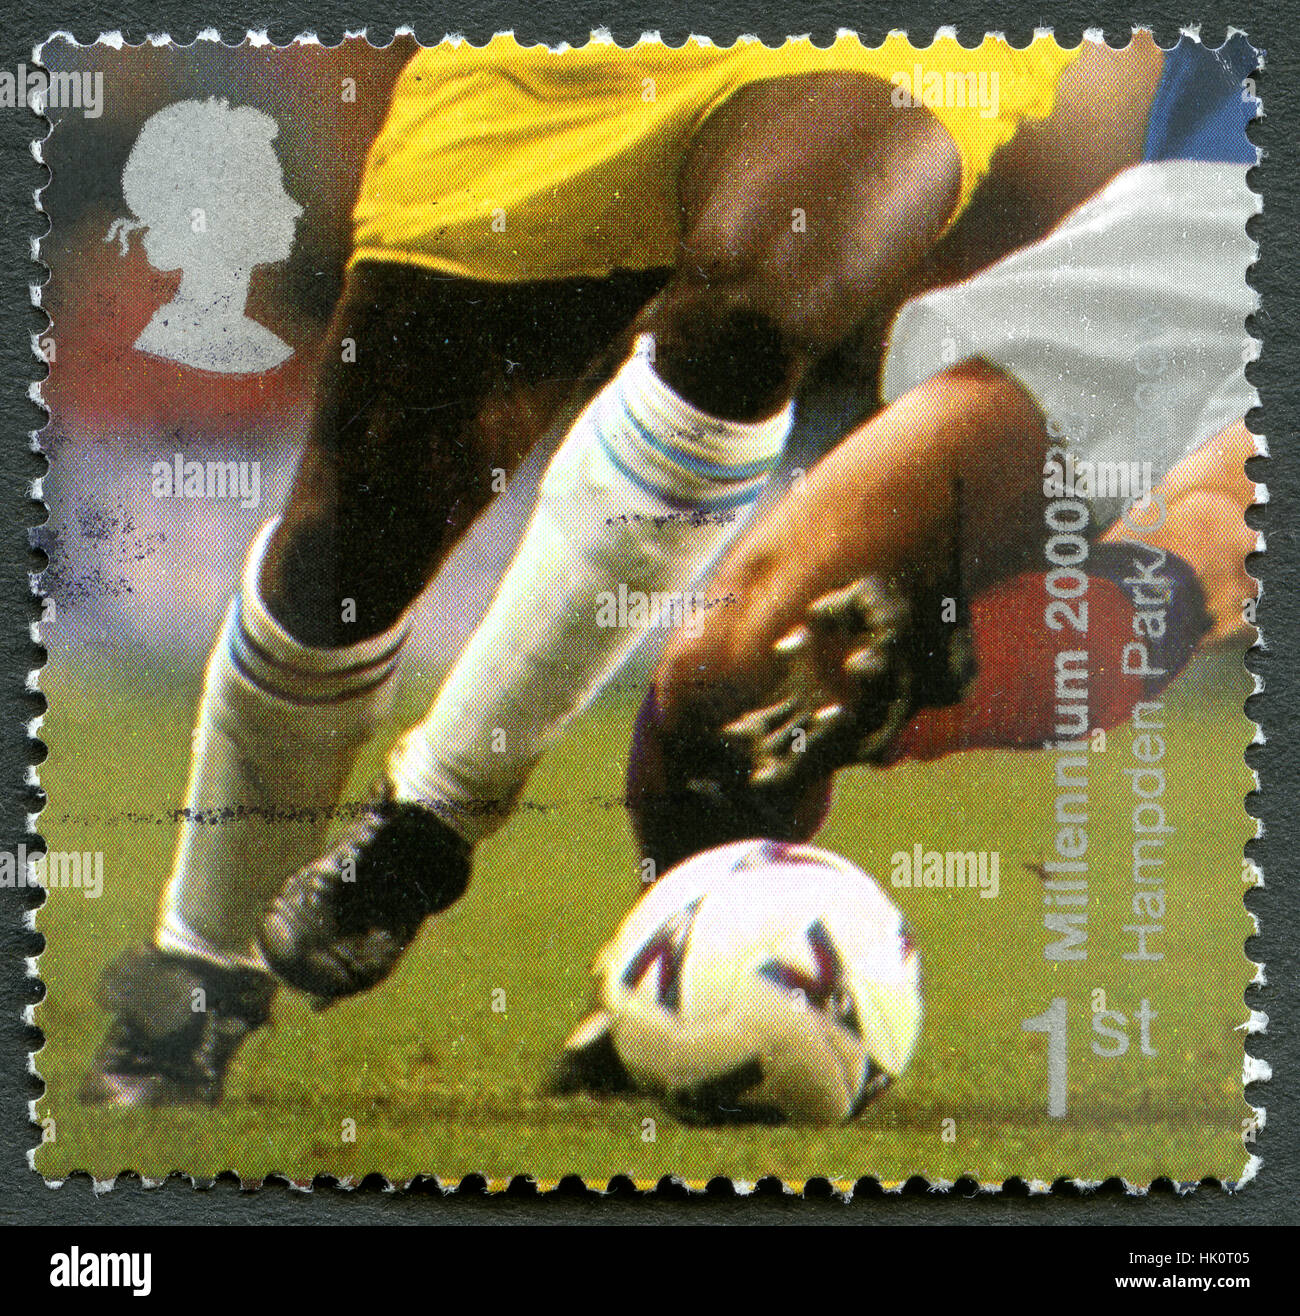 Gran Bretagna - circa 2000: un usato francobollo DAL REGNO UNITO, commemorando Hampden Park football Stadium di Glasgow, Scozia. Foto Stock